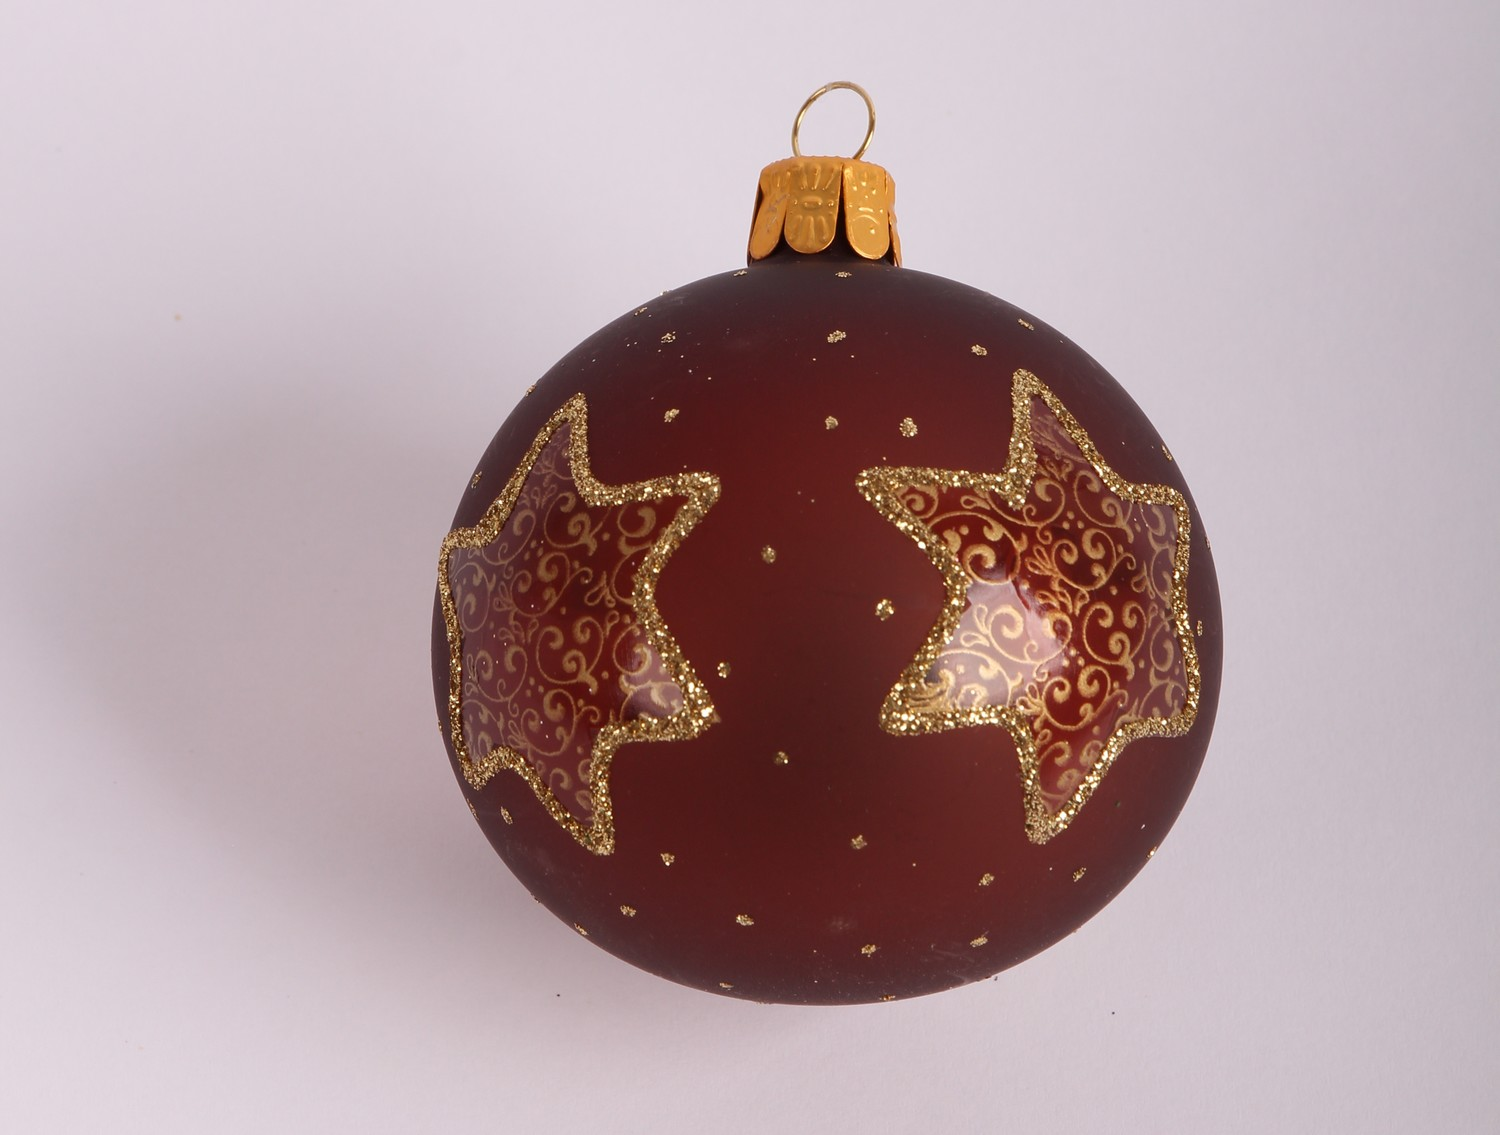 Vianočná ozdoba Hnedá guľa s hviezdami 7 cm, sklo